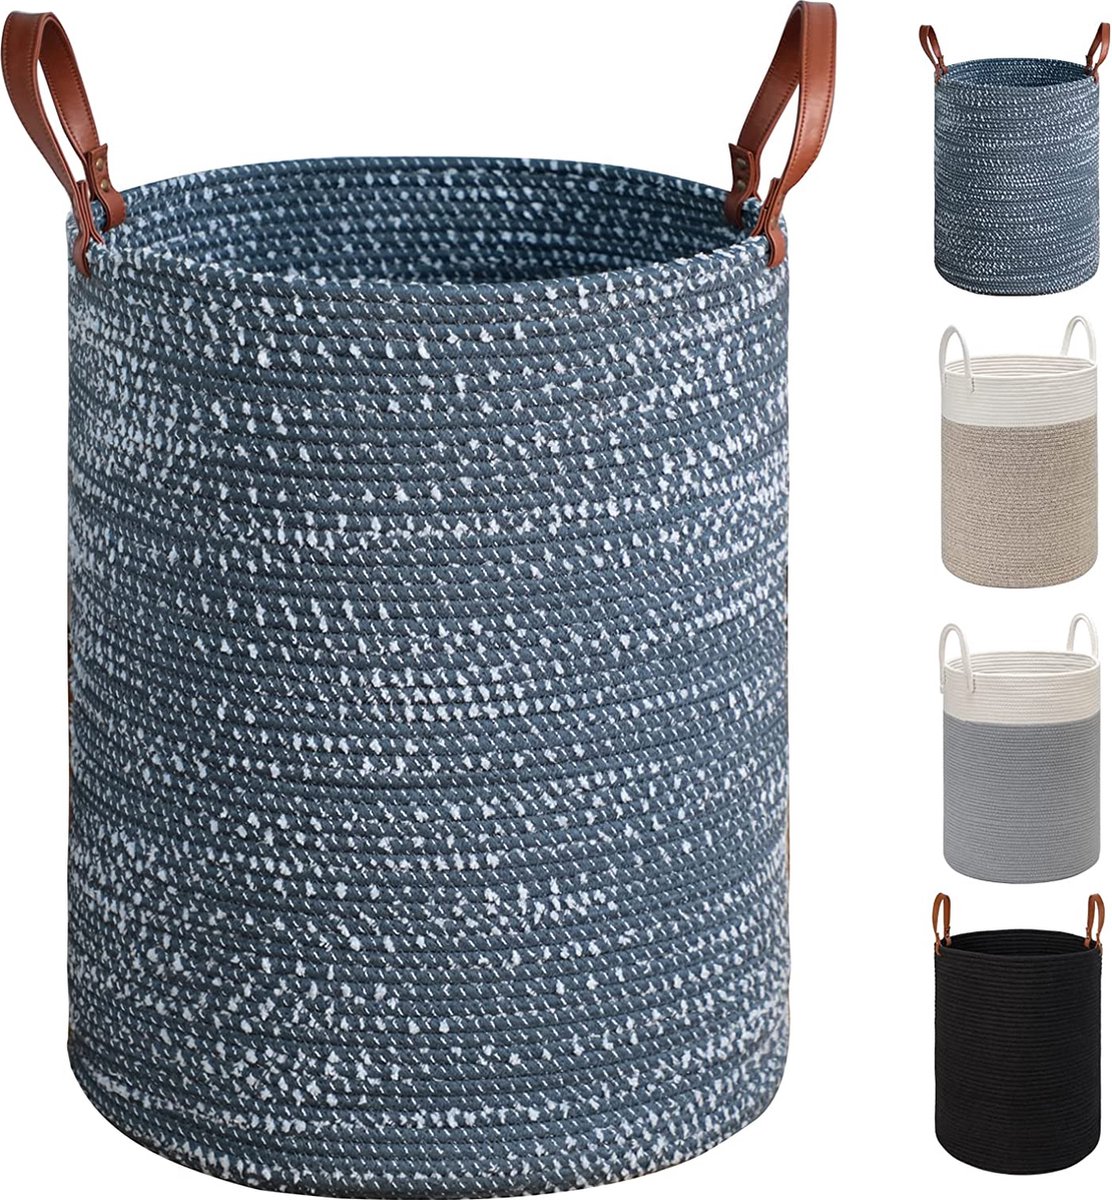 Grote wasmand van katoenen touw - 40 cm (D) x 50 cm (H) - inklapbare geweven mand met lederen handgrepen voor het opbergen van kleding, luiers, speelgoed (blauw)